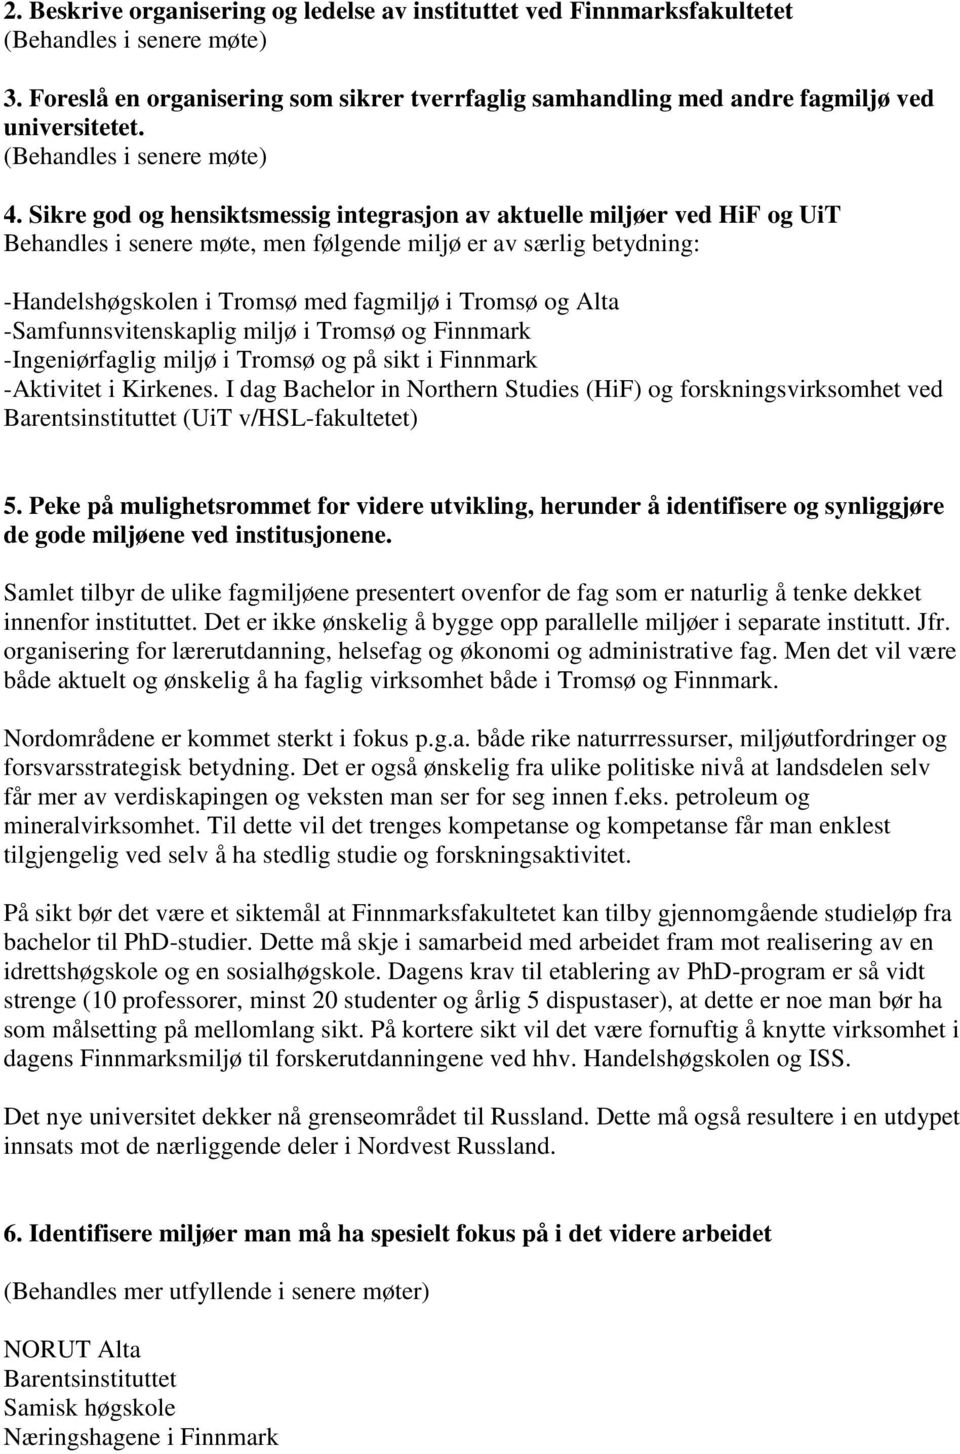 Sikre god og hensiktsmessig integrasjon av aktuelle miljøer ved HiF og UiT Behandles i senere møte, men følgende miljø er av særlig betydning: -Handelshøgskolen i Tromsø med fagmiljø i Tromsø og Alta